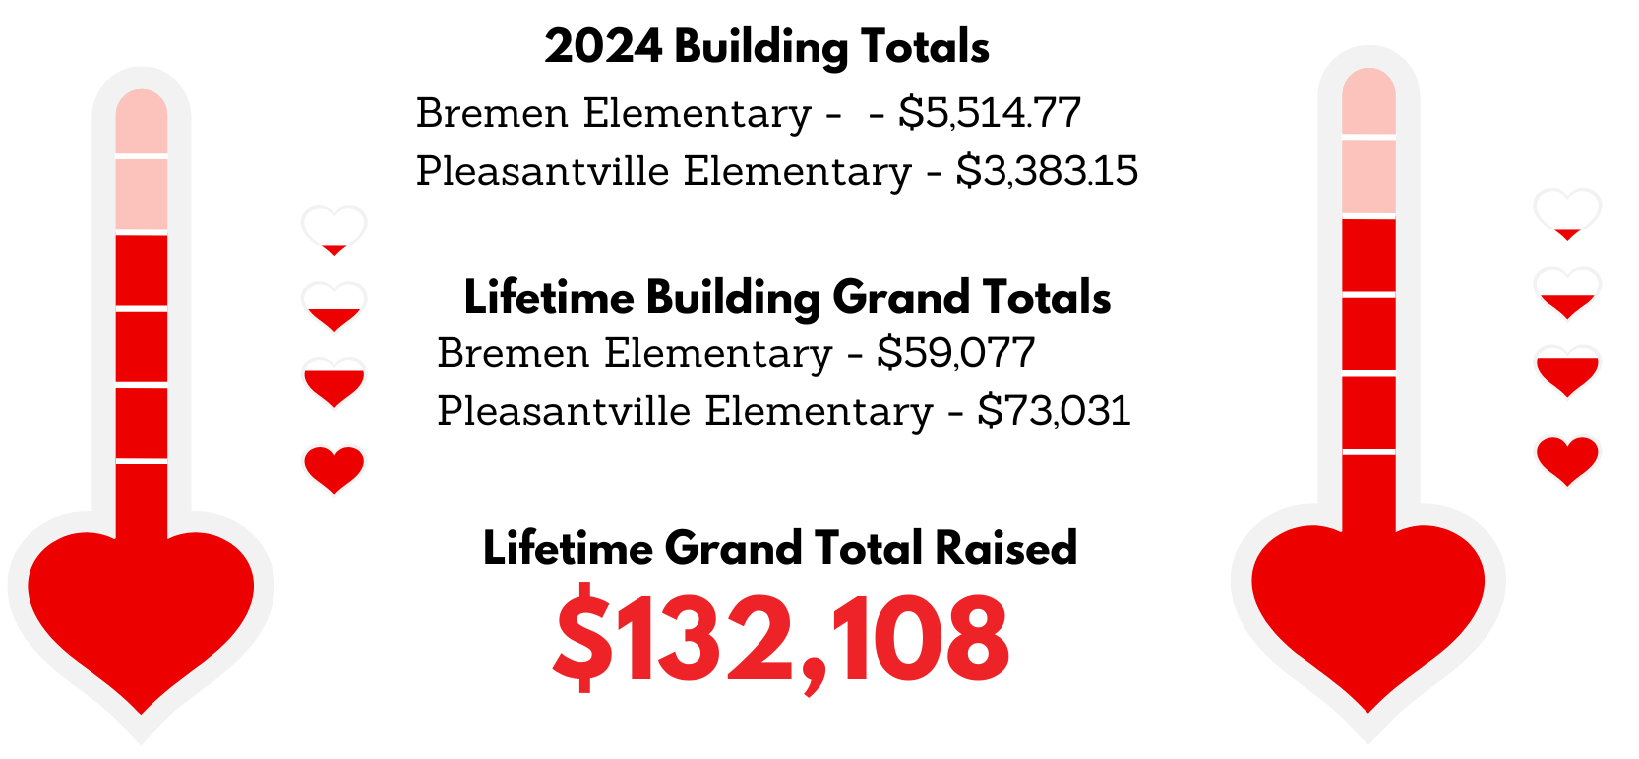 2024 Building Totals